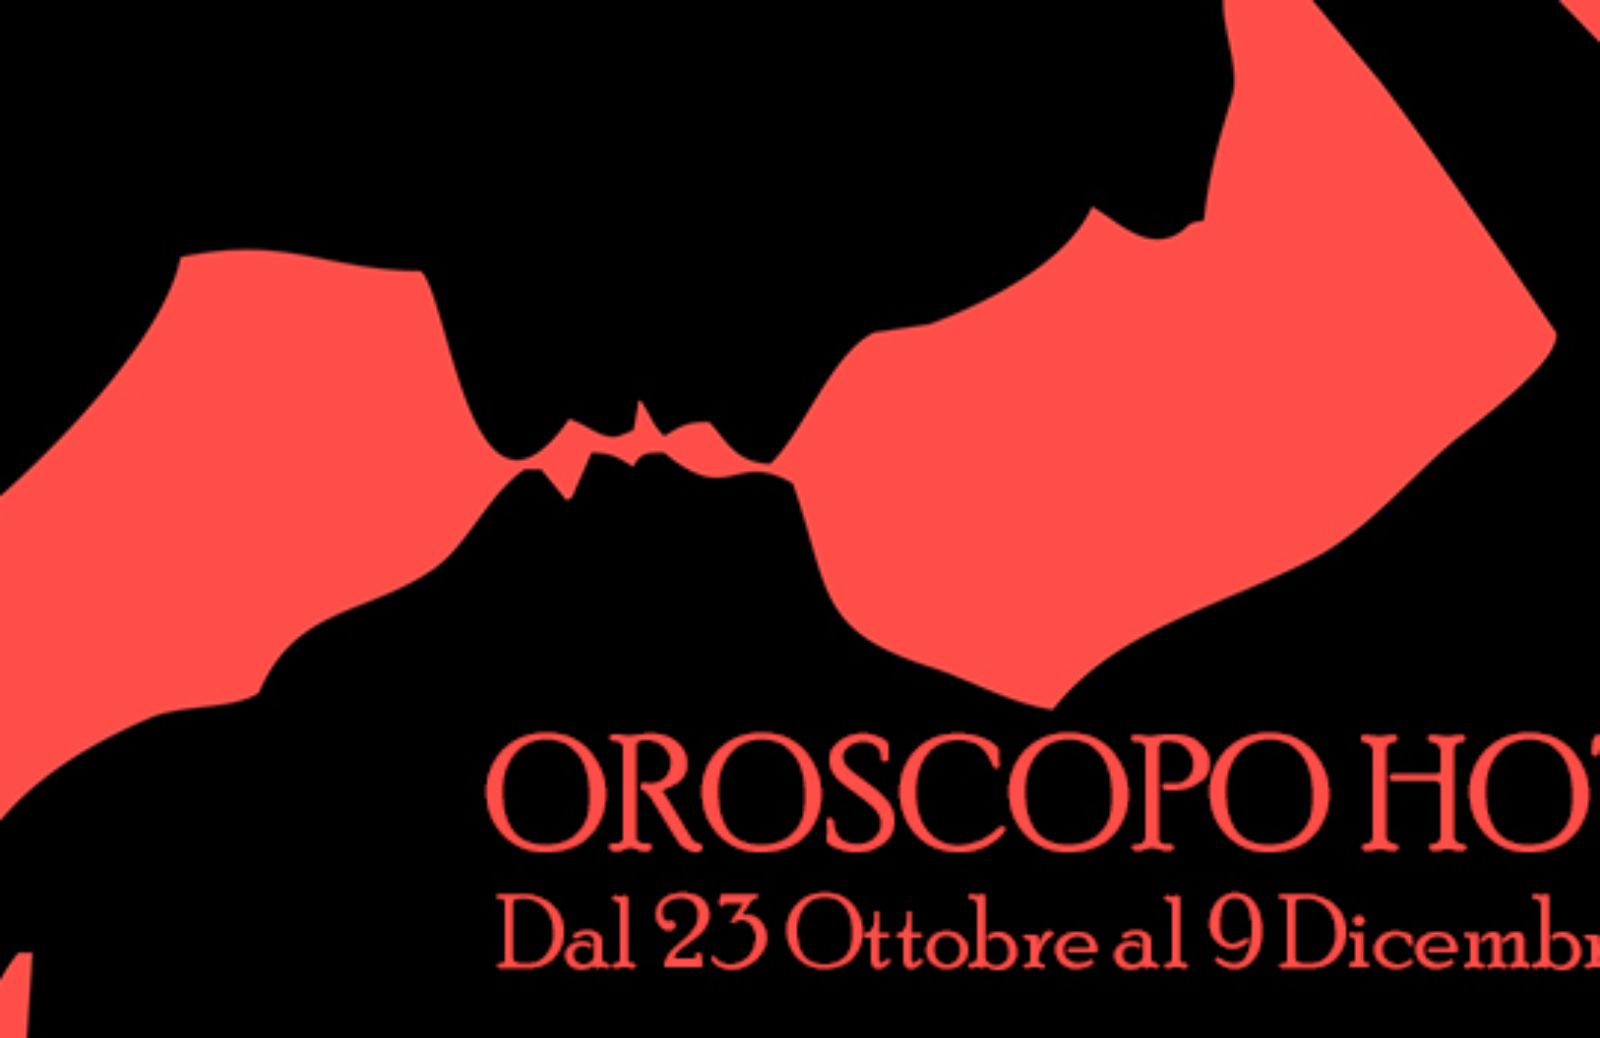 Oroscopo Hot: dal 23 ottobre al 9 dicembre